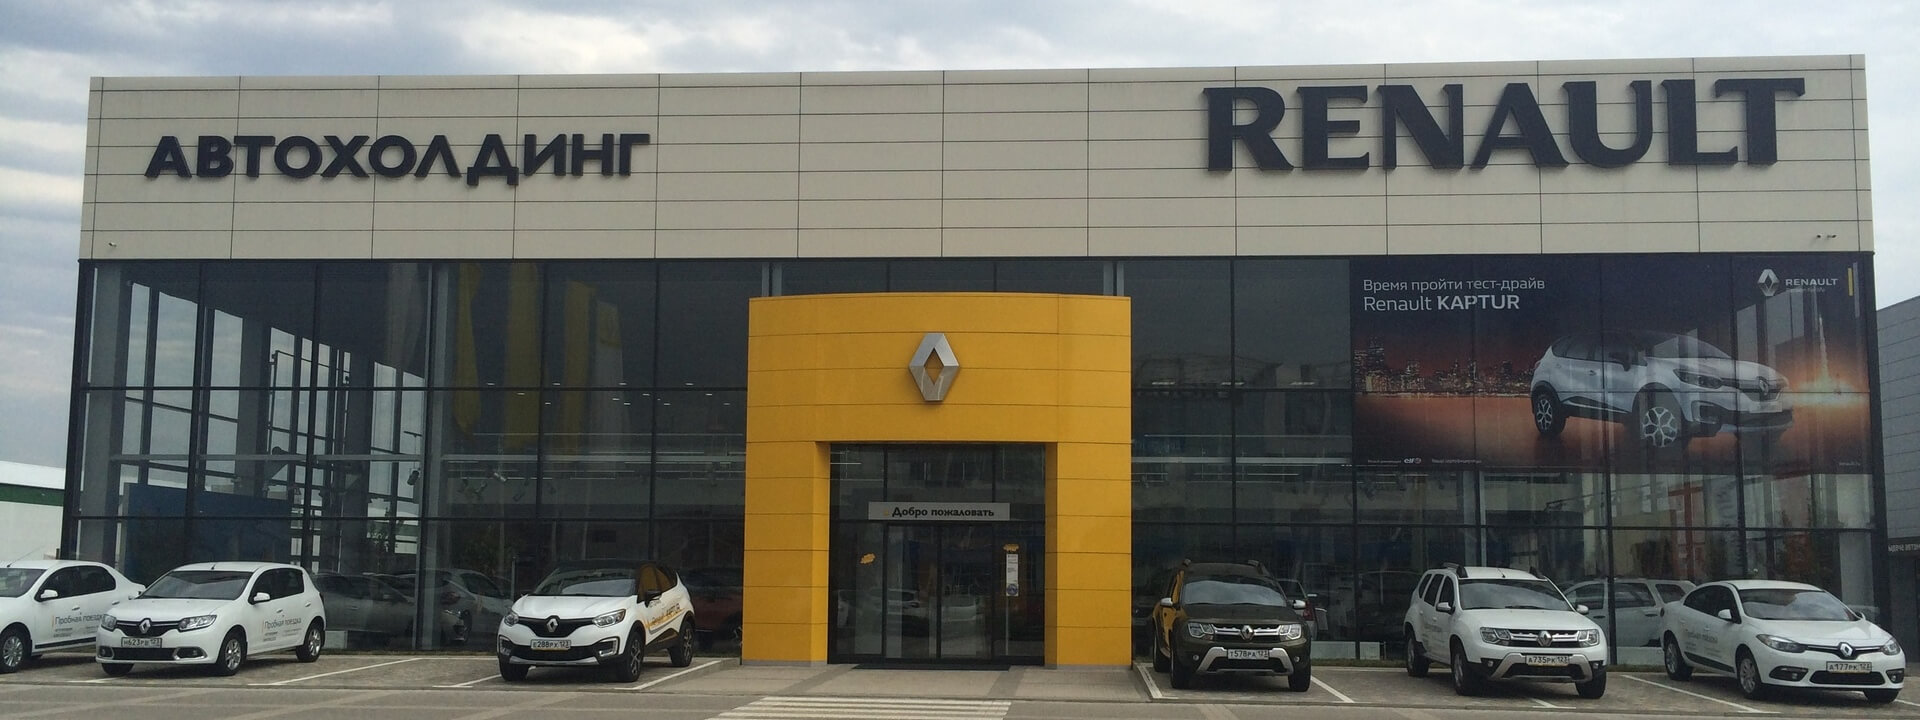 Ремонт Renault Logan — сервис, ремонт и техническое обслуживание (ТО) автомобилей Рено Логан в автосервисе в Краснодаре